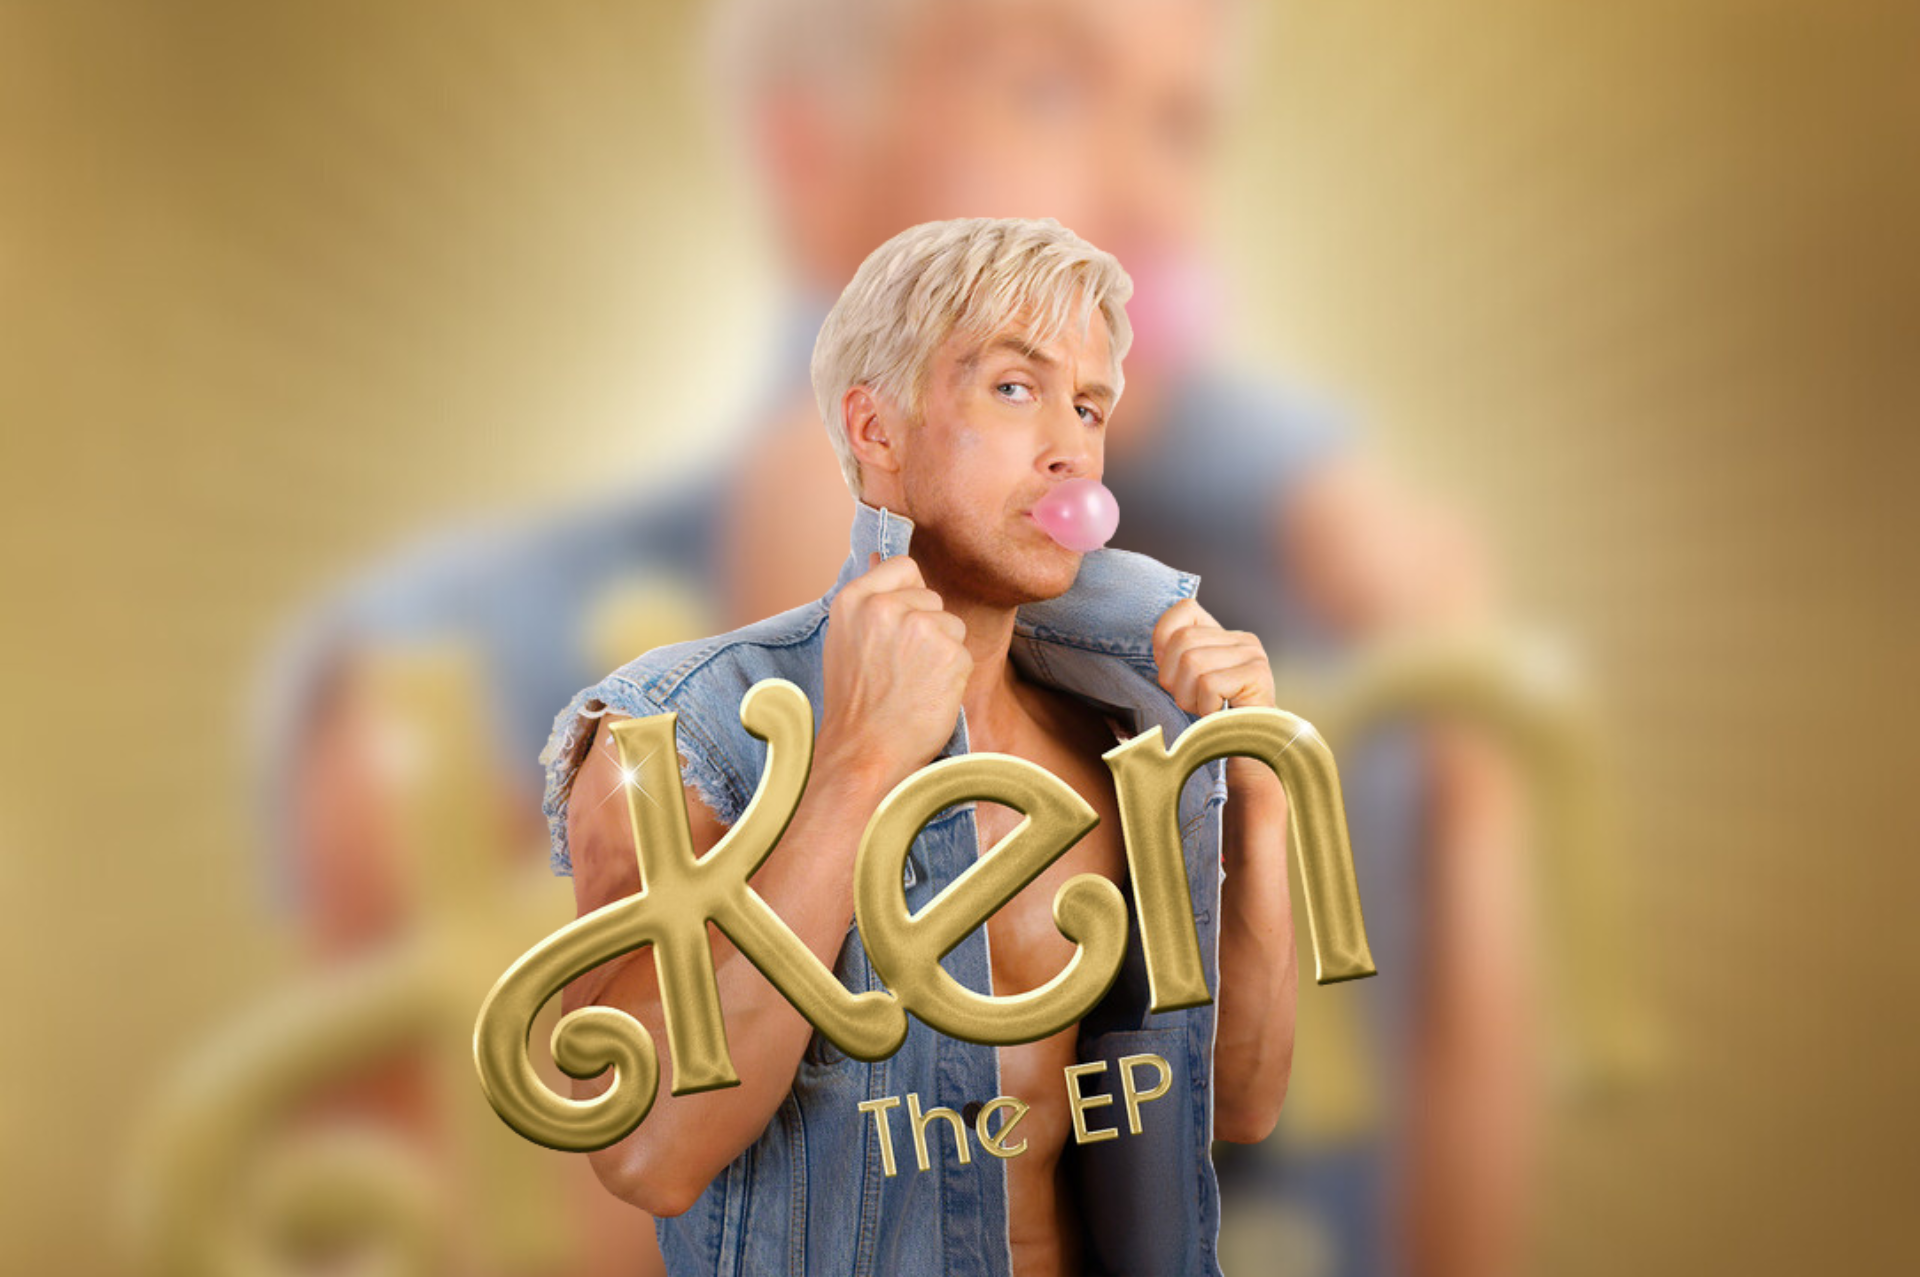 Ryan Gosling lanza EP de Ken producido por Mark Ronson